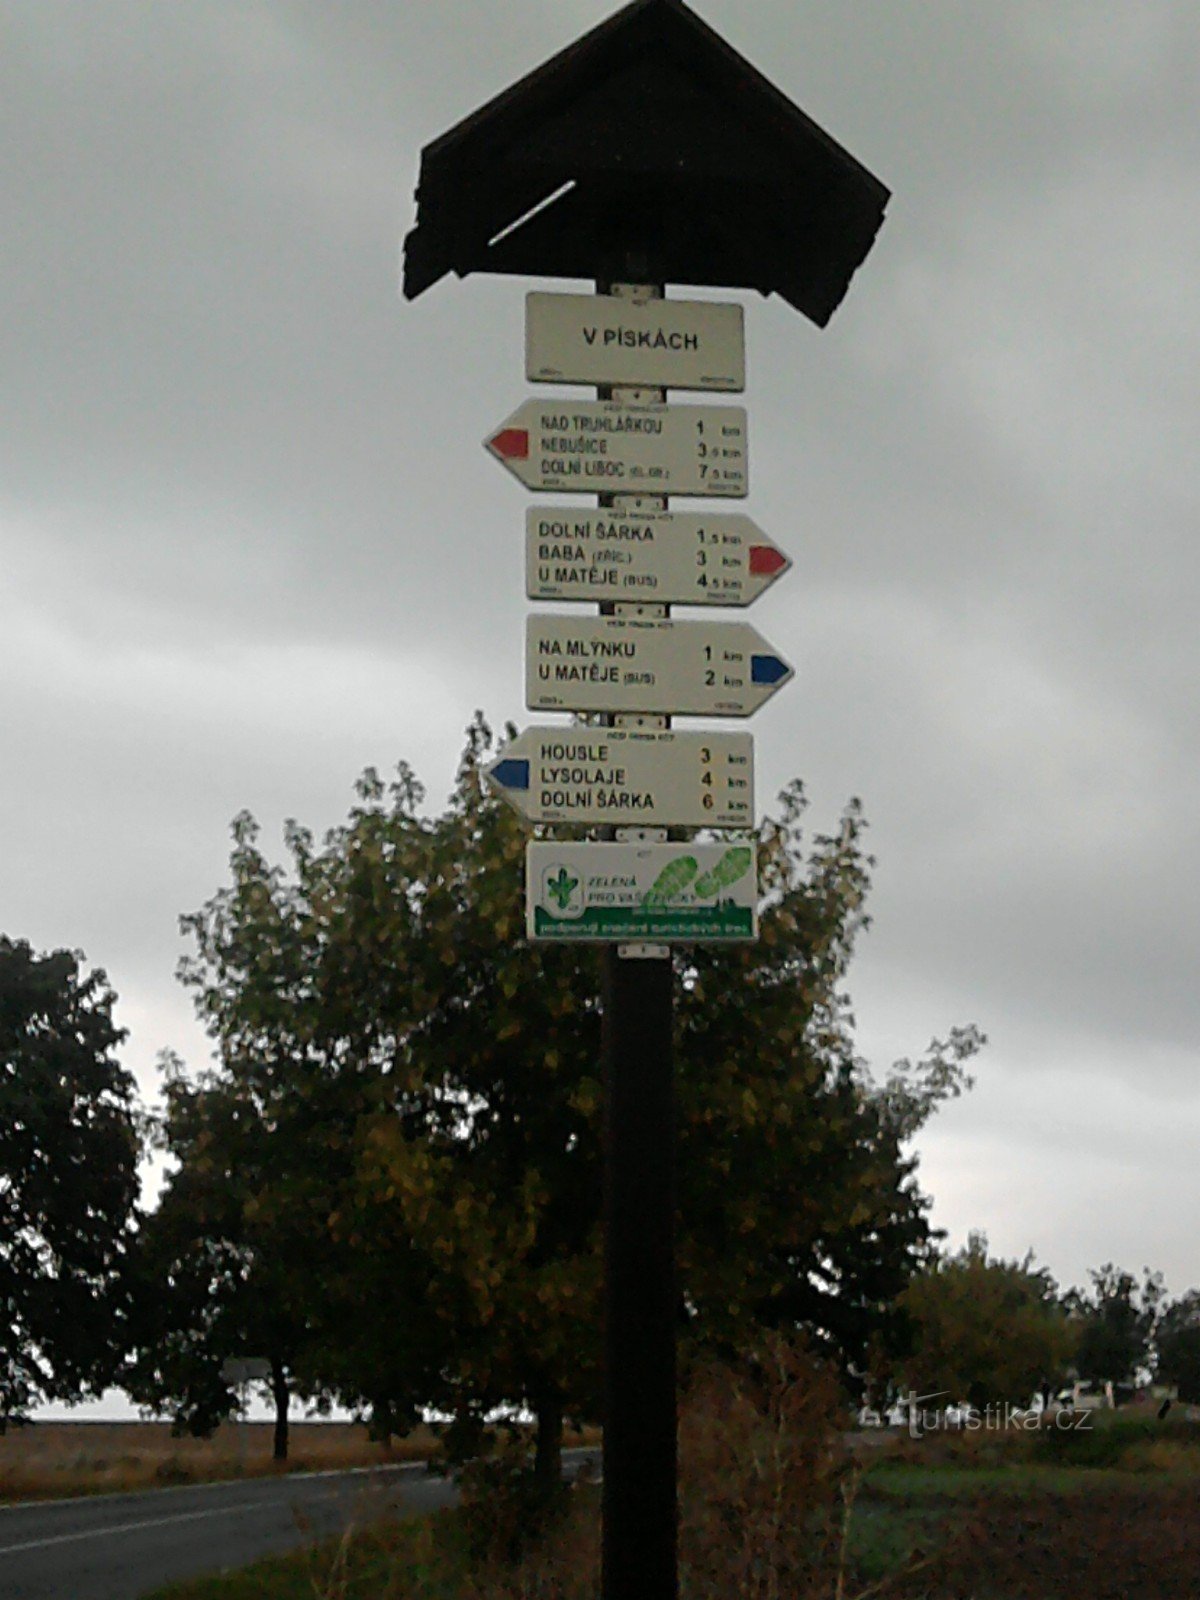 Signpost in Píské